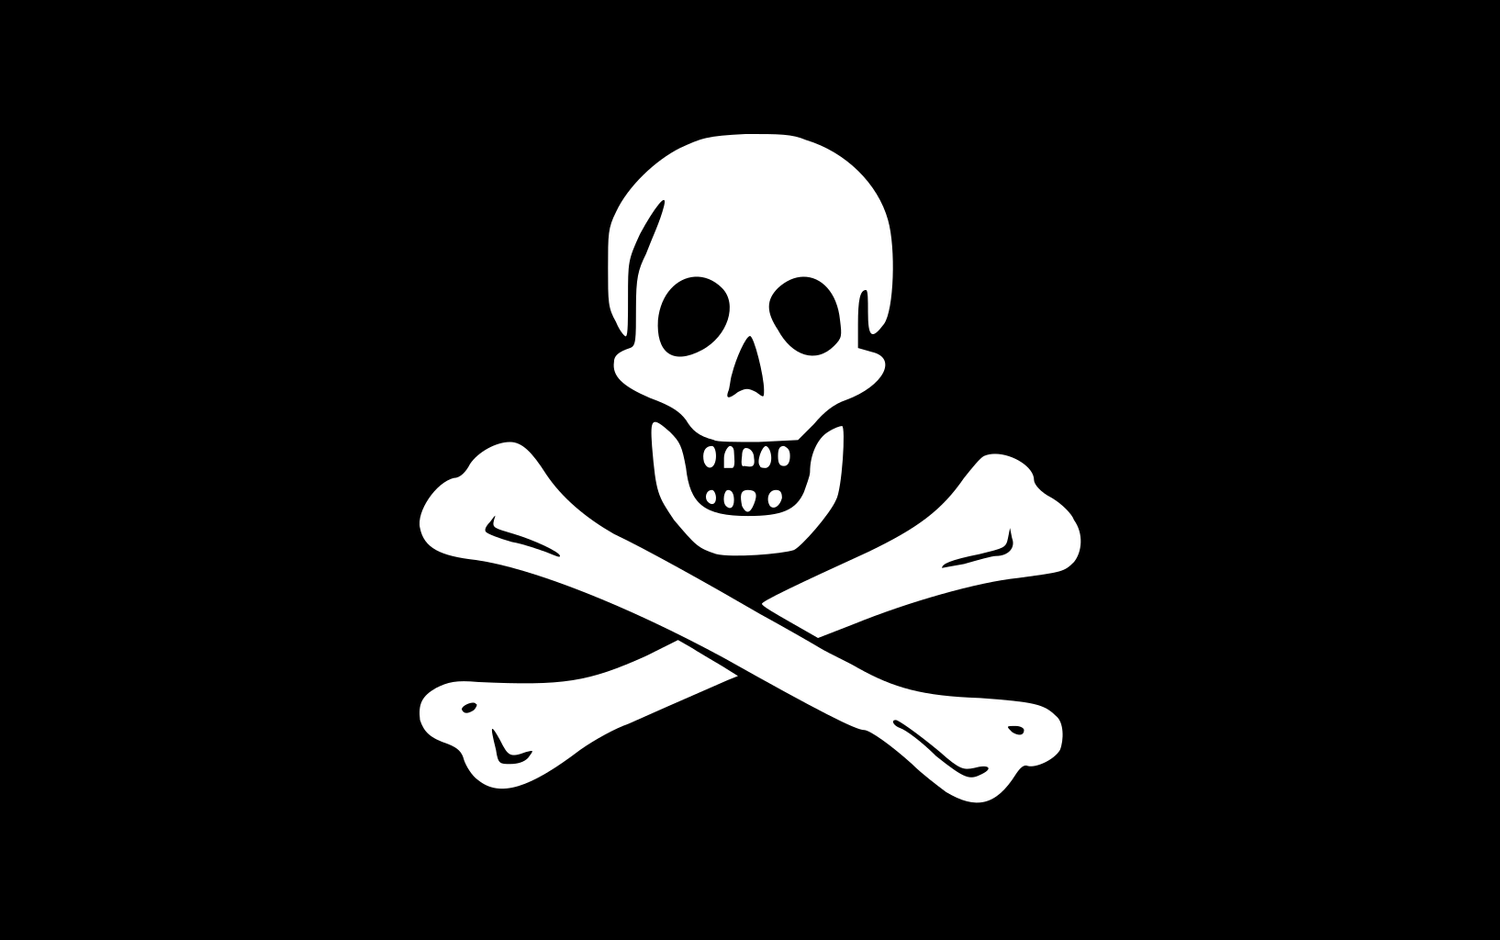 Der Jolly Rodger. die bekannteste Piratenflagge. Eingeführt durch den Pirat Edward England